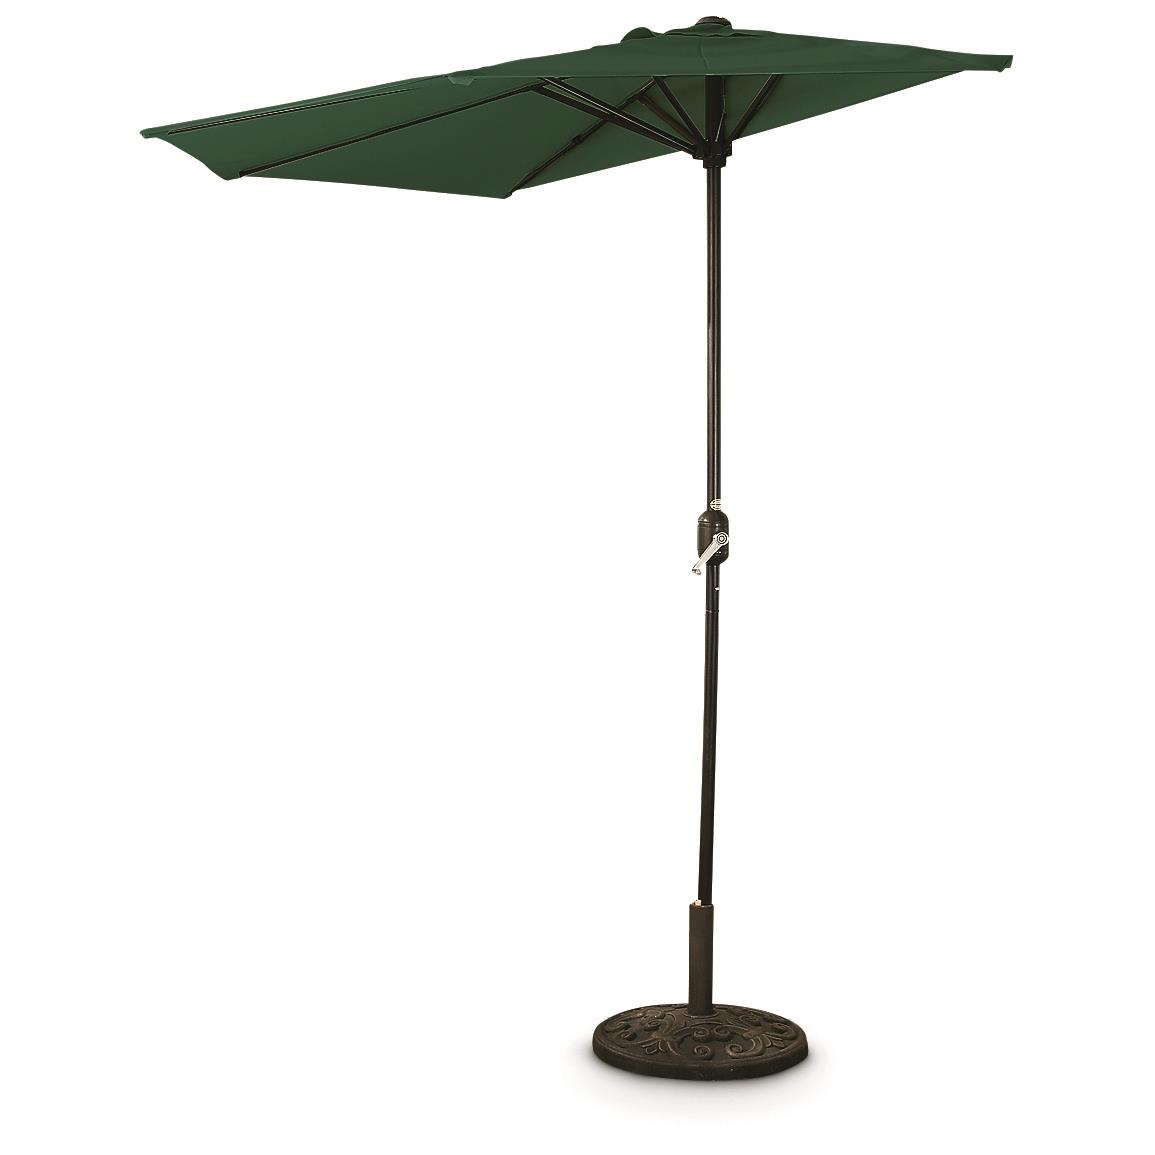 CASTLECREEK 8' Half Round Patio Umbrella - Patio Umbrellas at Sportsman's Guide